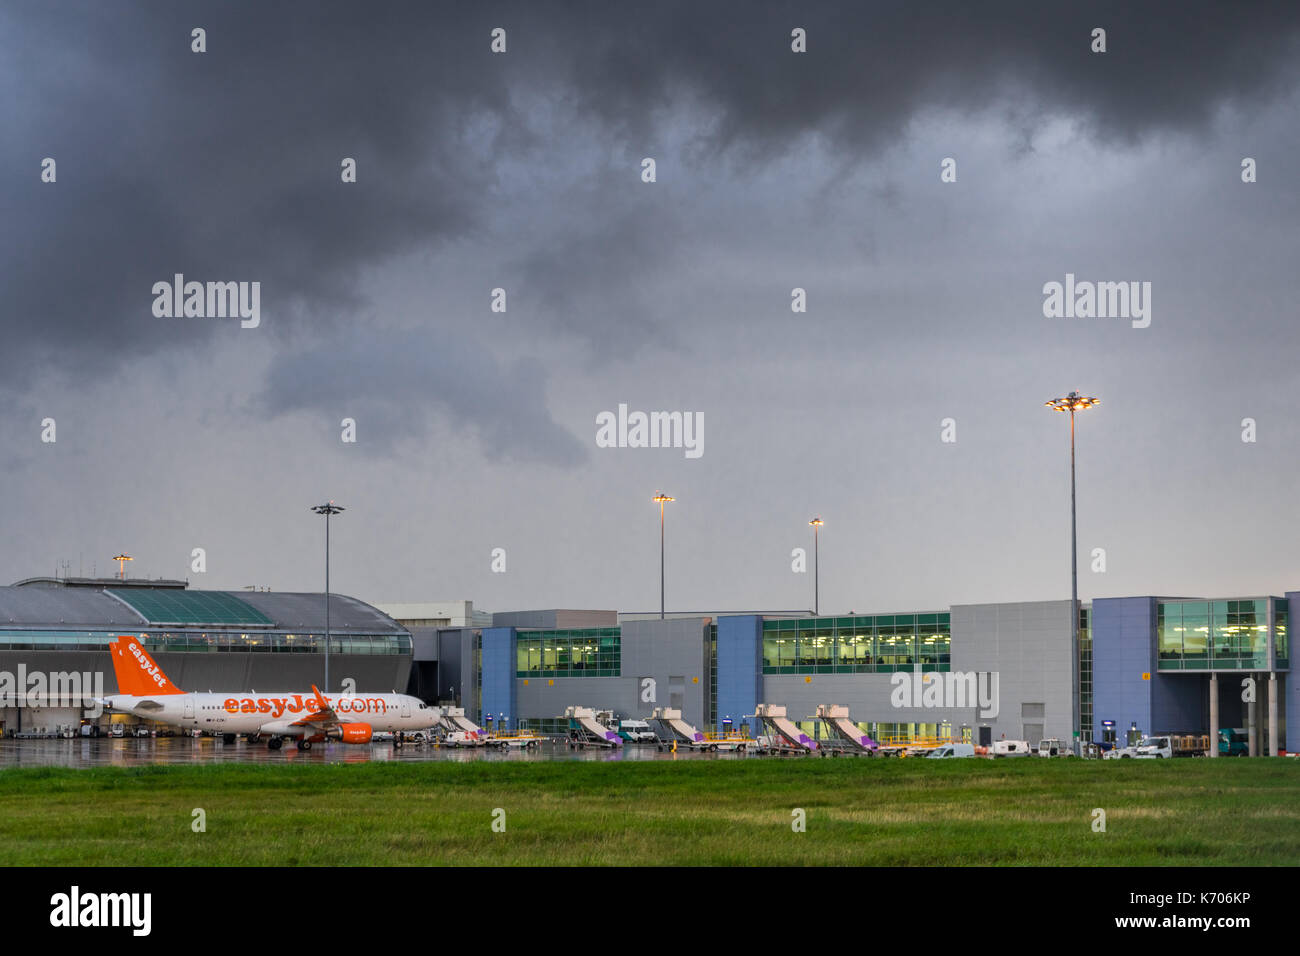 Tempesta drammatico nuvole sopra l'Aeroporto di Luton (LTN) con un piano di Easyjet su asfalto umido in 2017, Luton, Inghilterra, Regno Unito Foto Stock